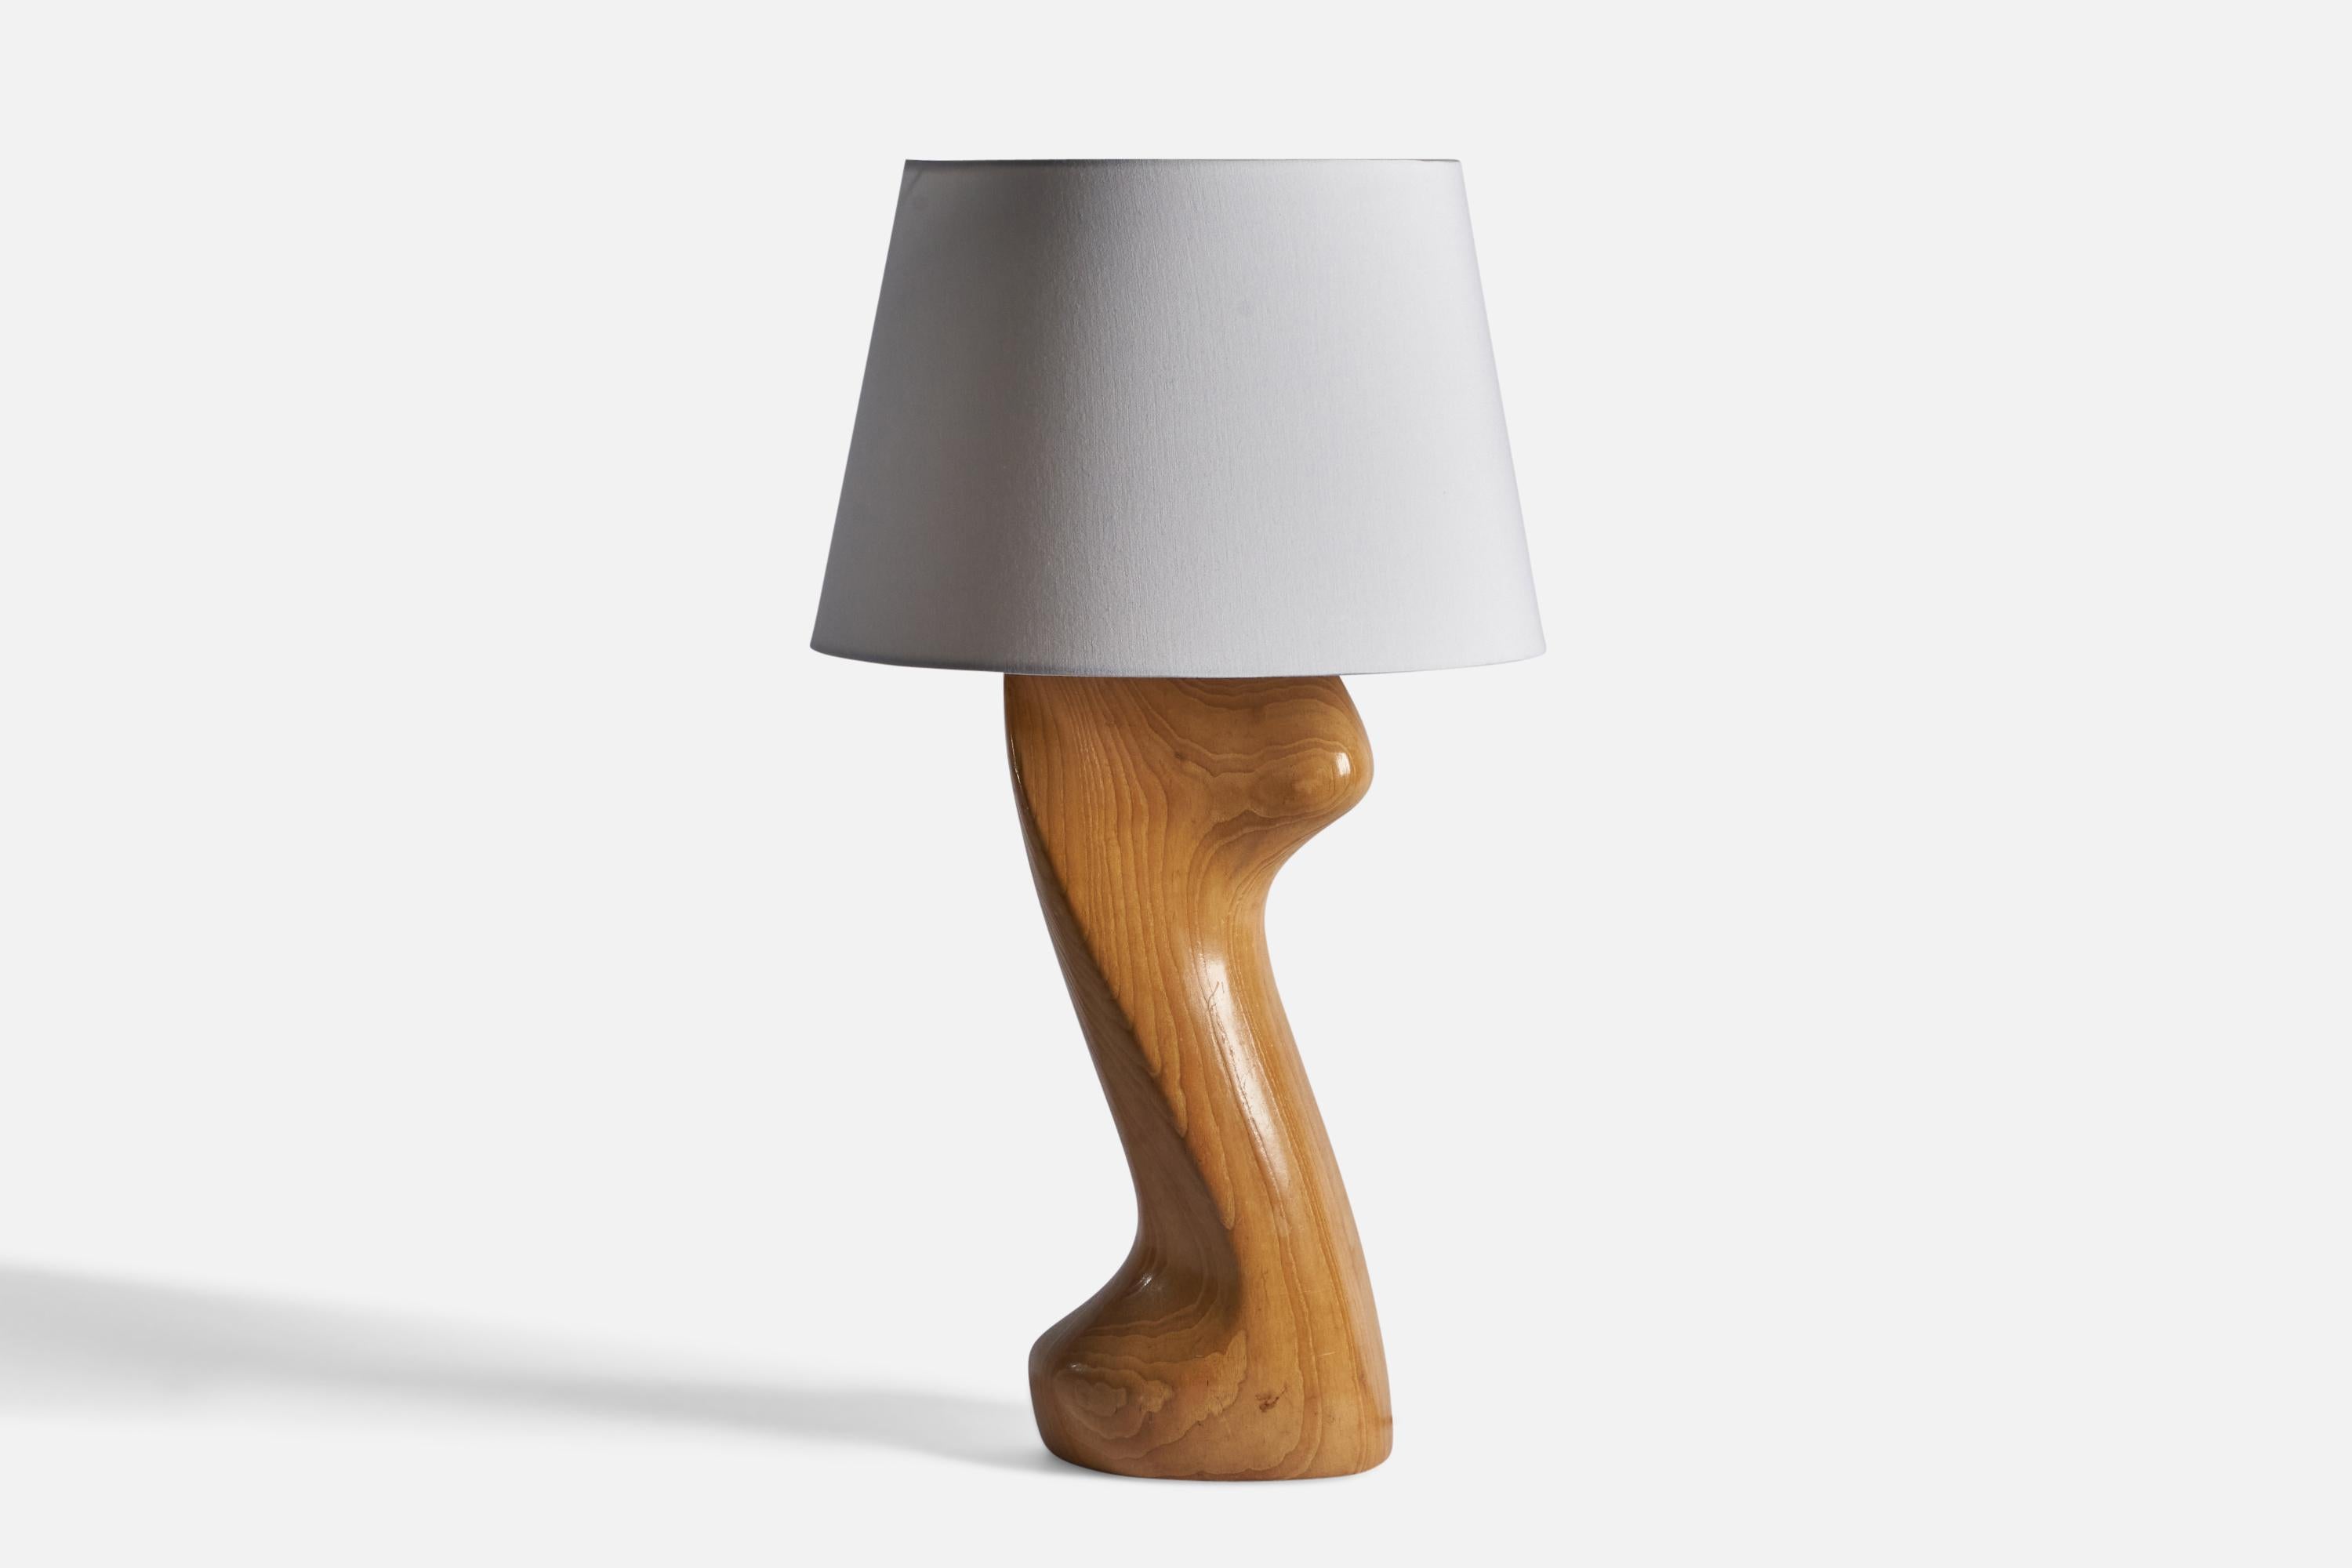 Importante lampe de table en chêne massif, design et production attribués à Yasha Heifetz, États-Unis, années 1950.

Dimensions de la lampe : 28.25